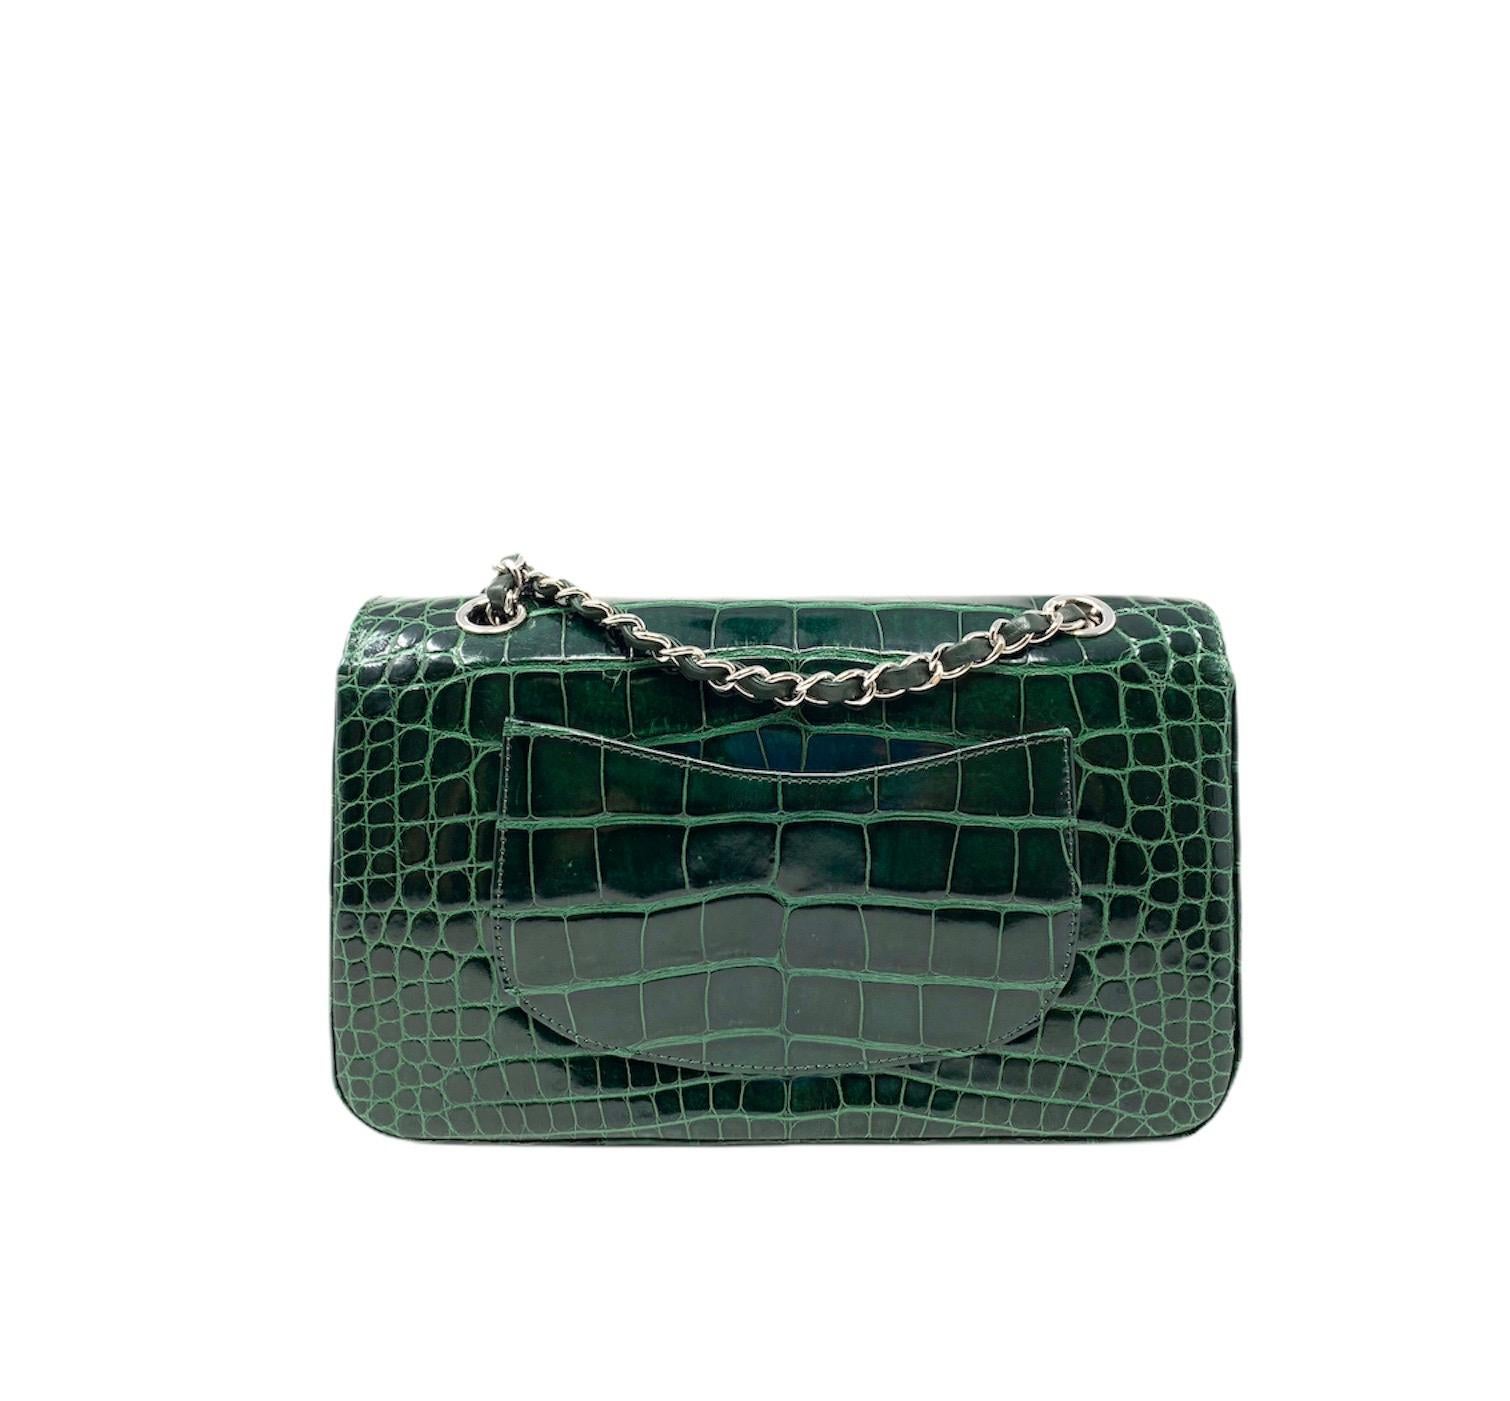 Black CHANEL Crocodile Green Classique bag , 2011 